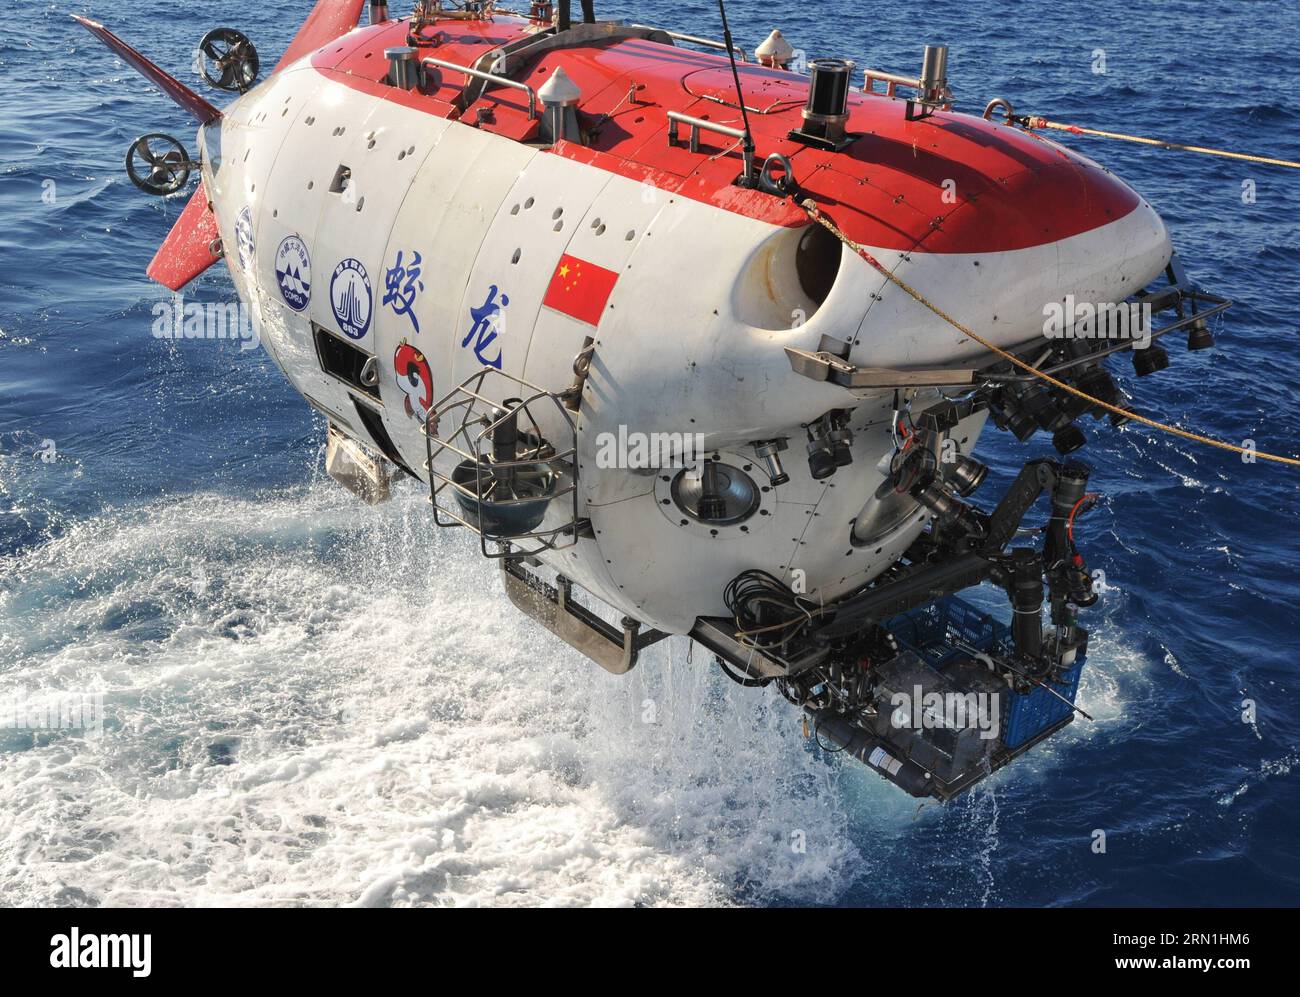 A BORD du XIANGYANGHONG 09, le 2 janvier 2015 -- le submersible chinois Jiaolong est sorti de l'eau dans l'océan Indien, le 2 janvier 2015. Jiaolong a effectué la première plongée d’une mission d’étude du vent hydrothermal actif dans le sud-ouest de l’océan Indien le 2 janvier. C'était la première fois que le submersible emmenait le deuxième lot de pilotes stagiaires en plongée, qui devait permettre aux stagiaires d'acquérir certaines compétences en fonctionnement submersible dans un évent hydrothermal actif et de recueillir des échantillons de fluide hydrothermal, de sulfure, de roches, de sédiments et d'eau.) (HDT) OCÉAN INDIEN-CHINE-JIAOLON Banque D'Images